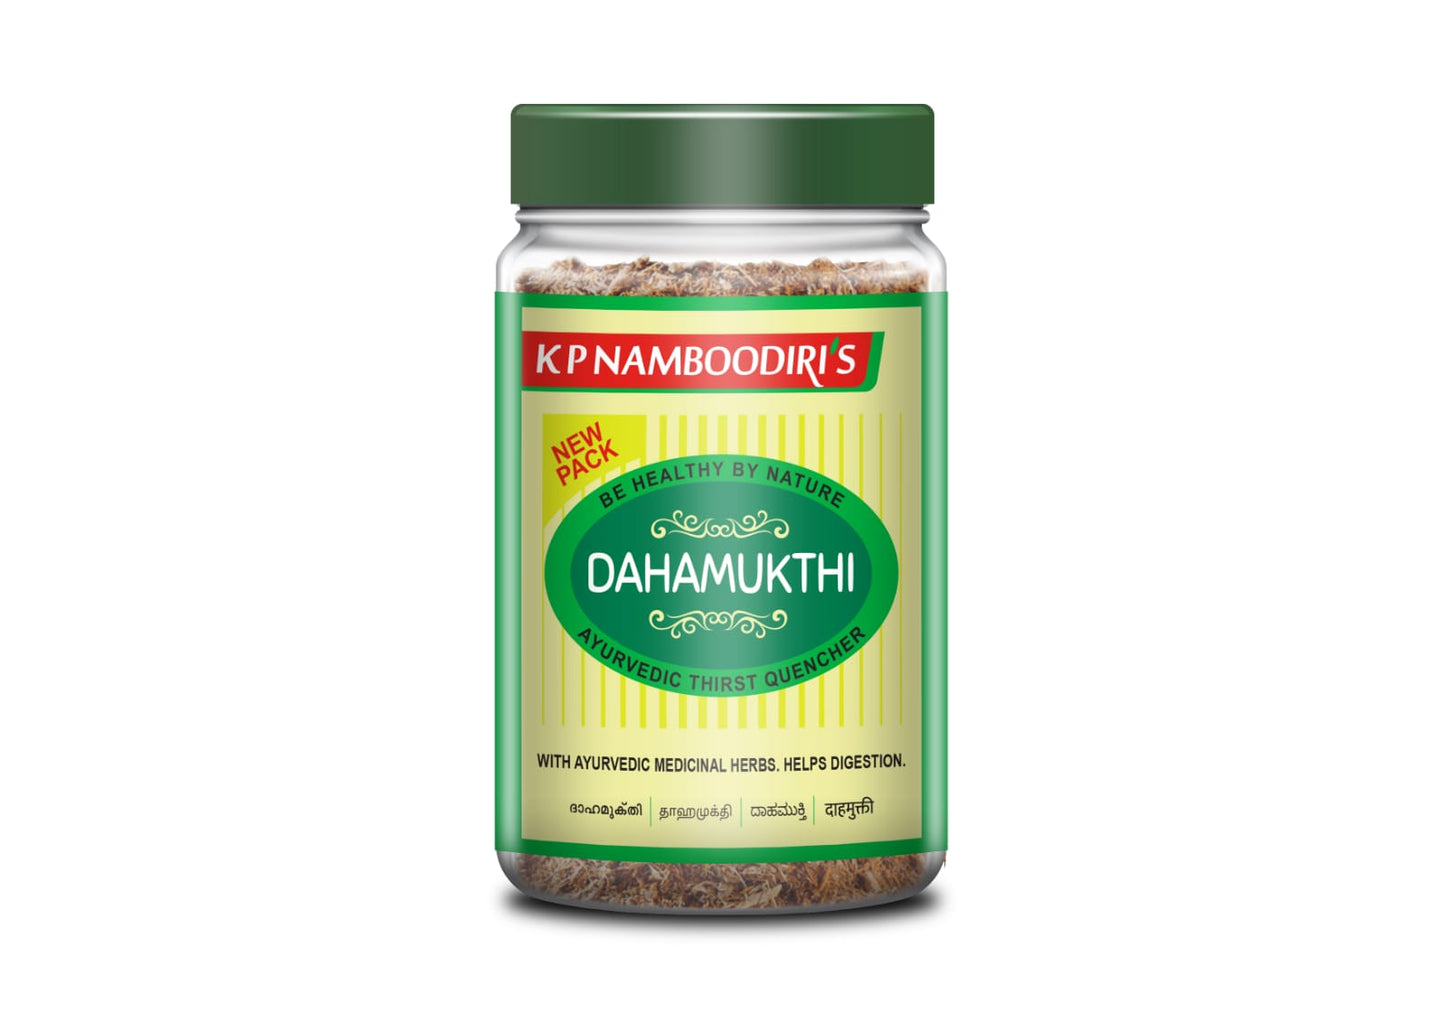 K P Namboodiri’s Dahamukthi